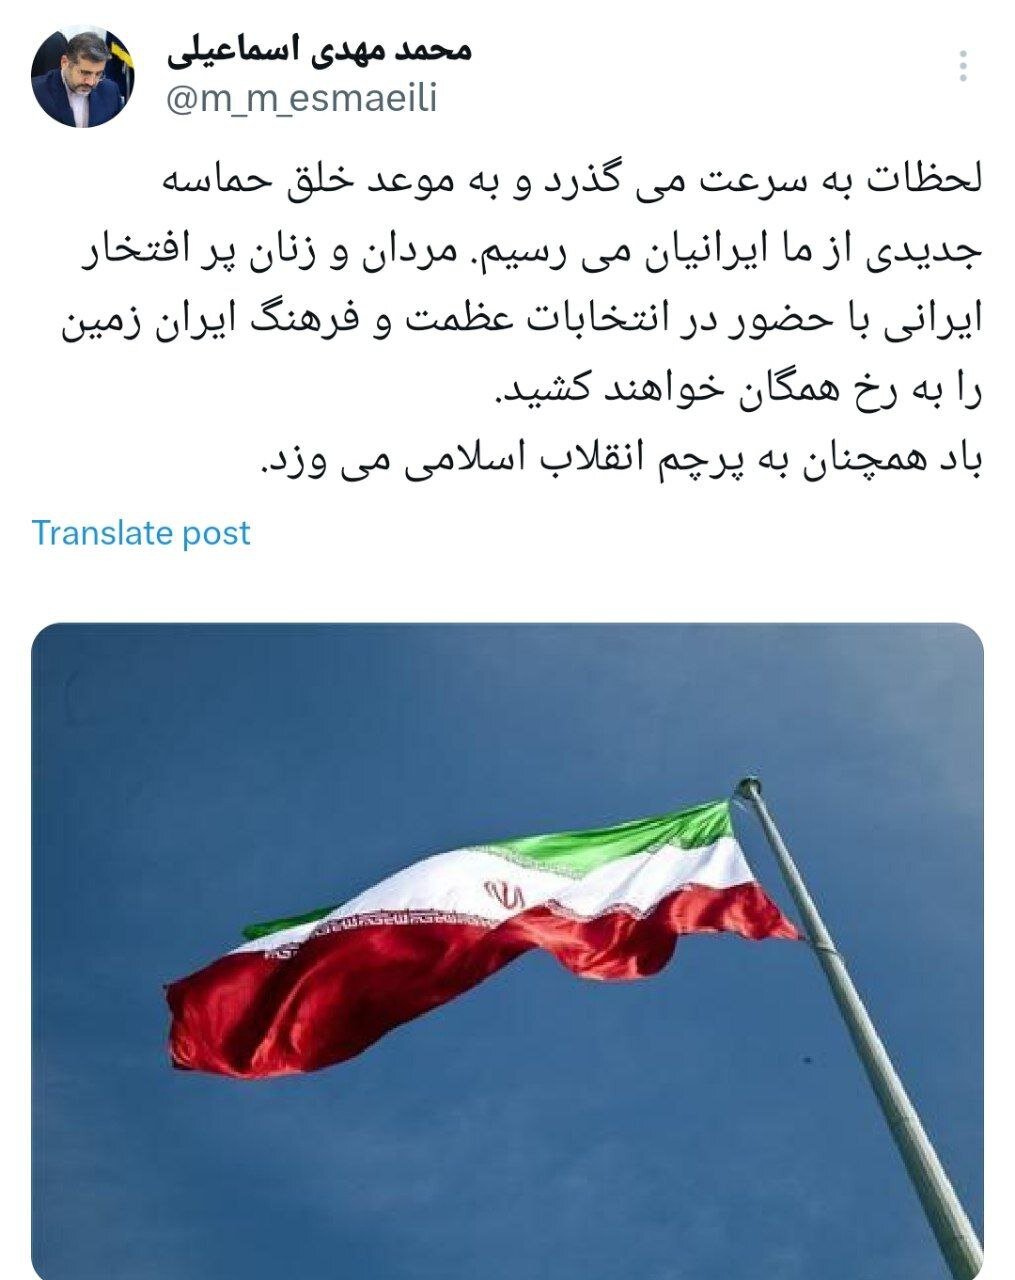 مردم عظمت و فرهنگ ایران را به رخ خواهند کشید